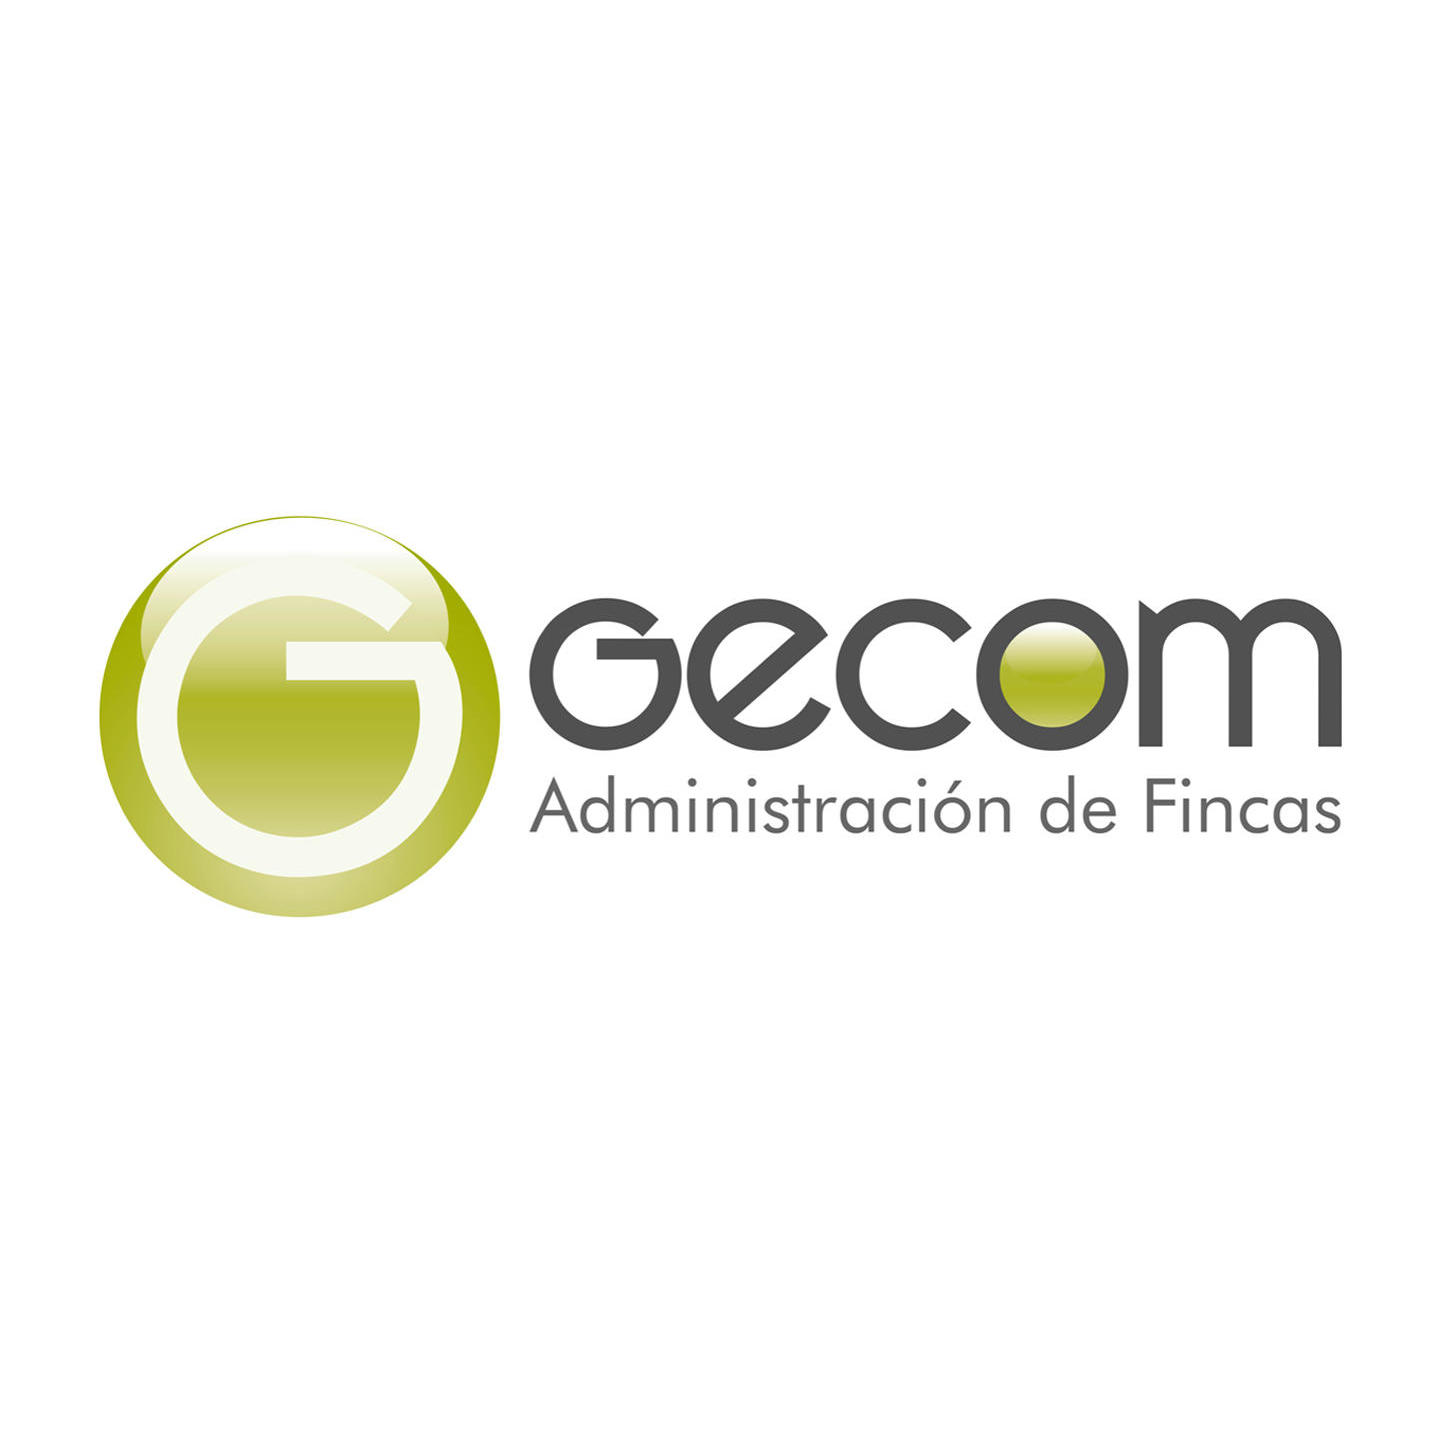 GECOM Administración de Fincas Cáceres